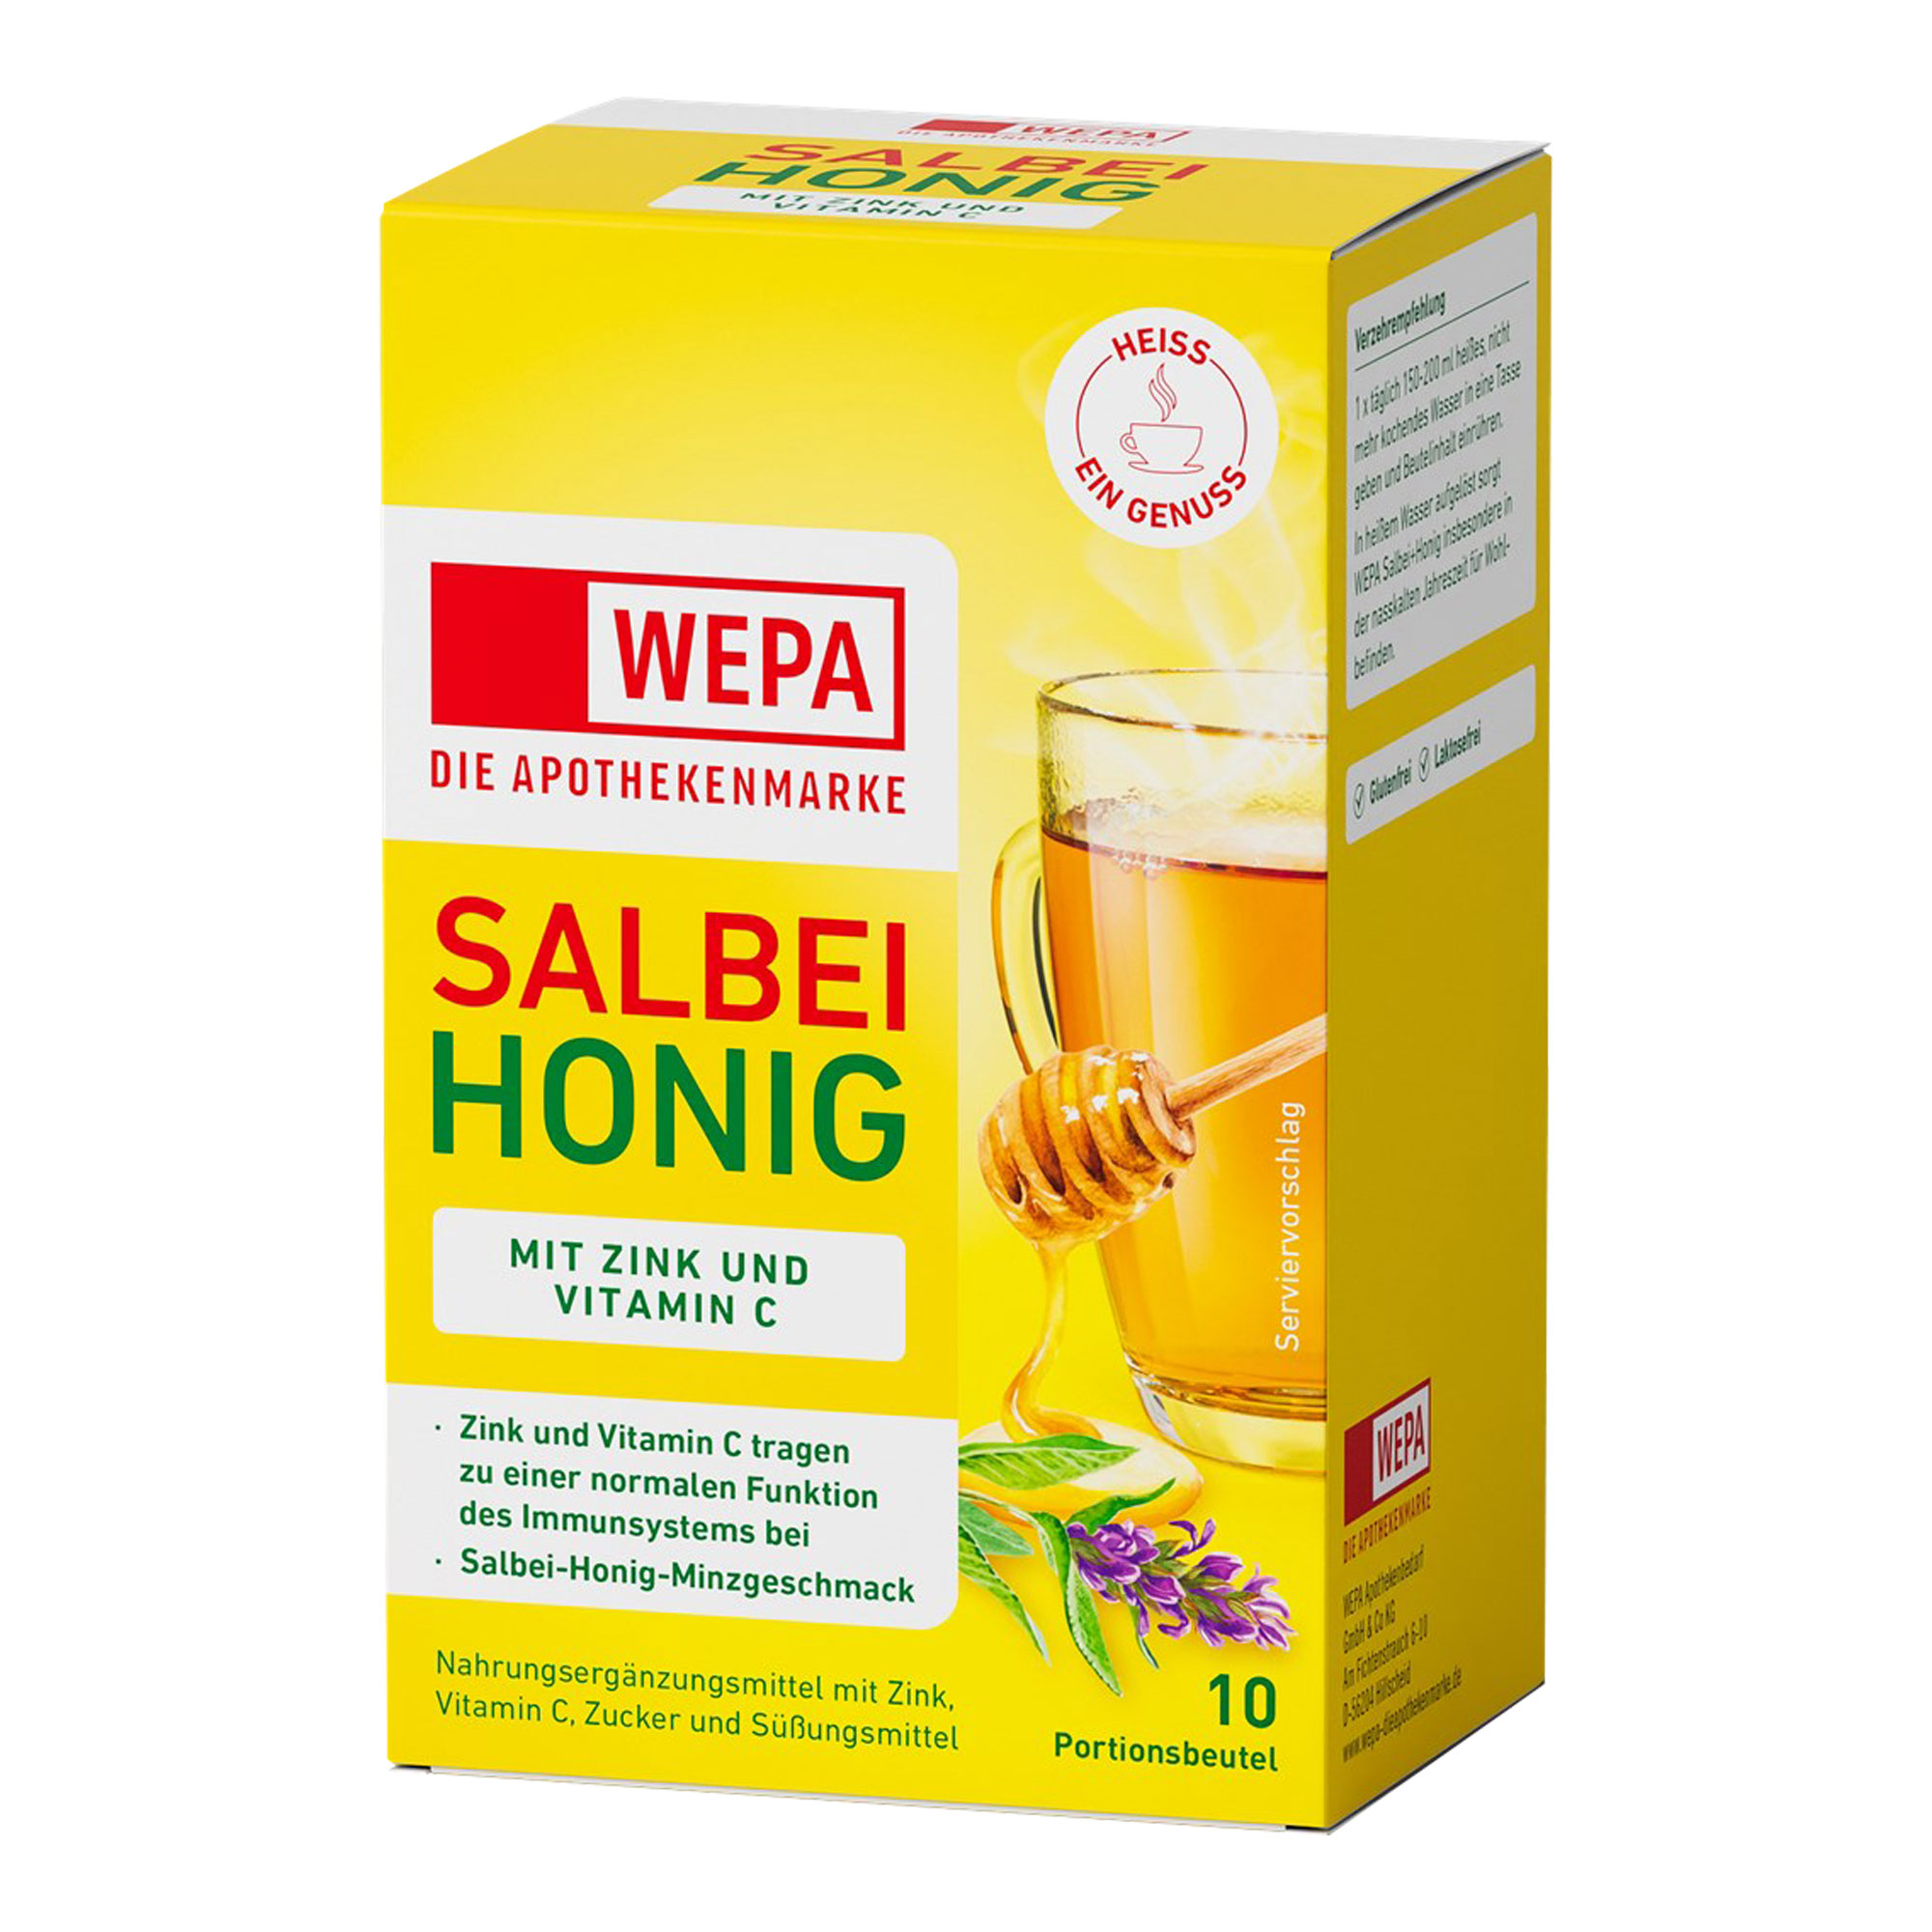 Nahrungsergänzungsmittel mit Zink und Vitamin C. Mit Salbei-Honig-Minzgeschmack.